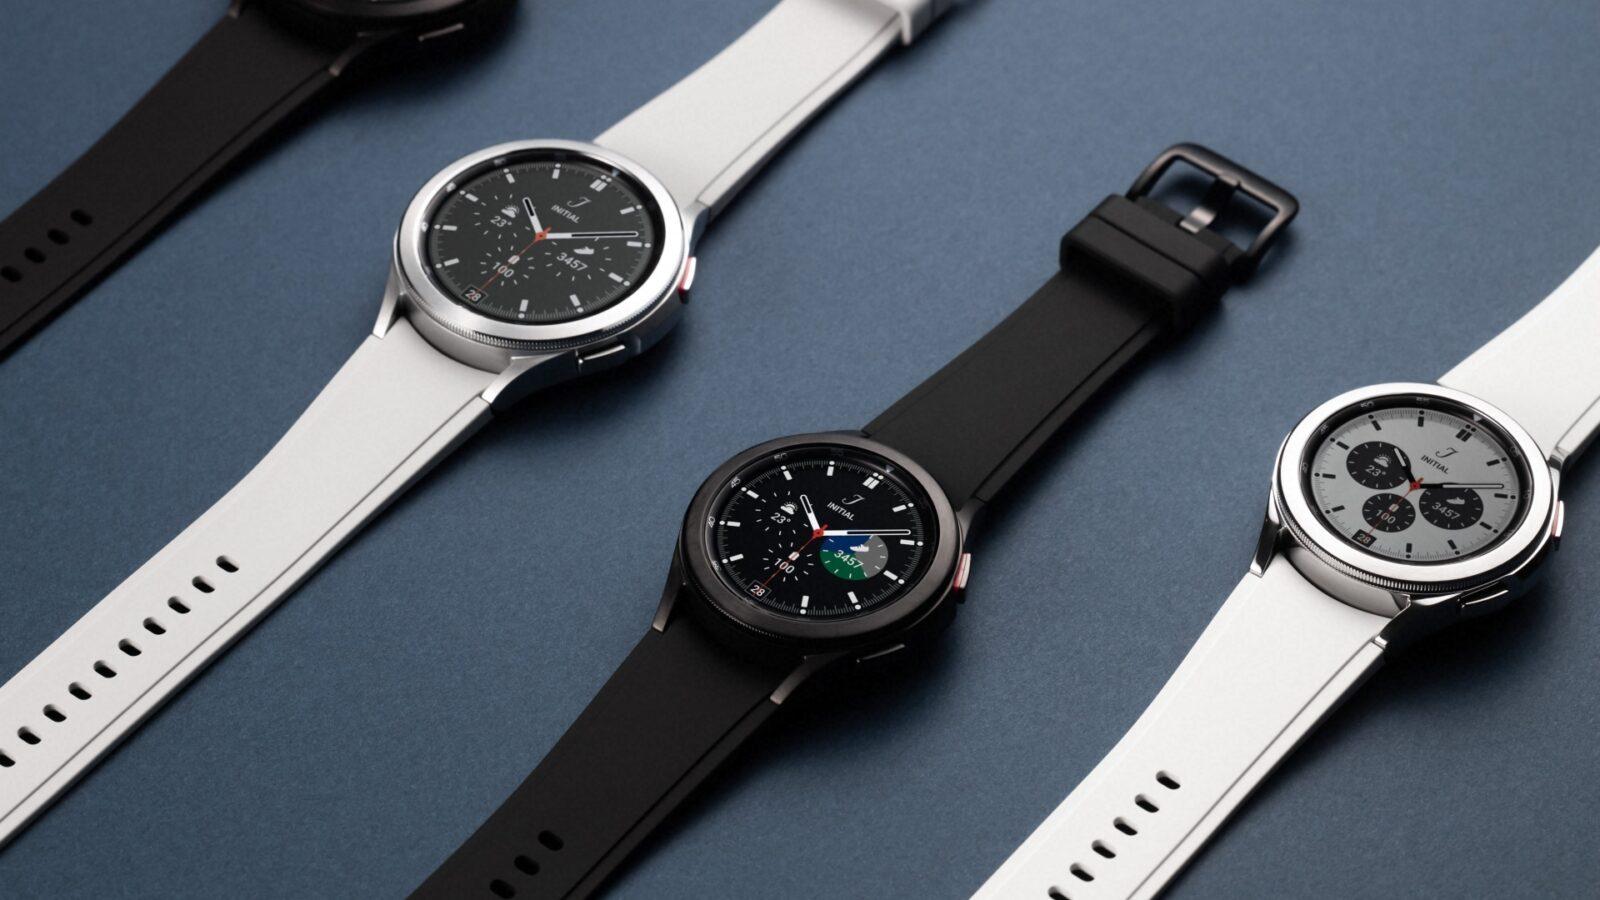 Aplikacja WalkieTalkie zmienia smartwatch Samsung Galaxy Watch 4 i Galaxy Watch 4 Classic w walkie-talkie